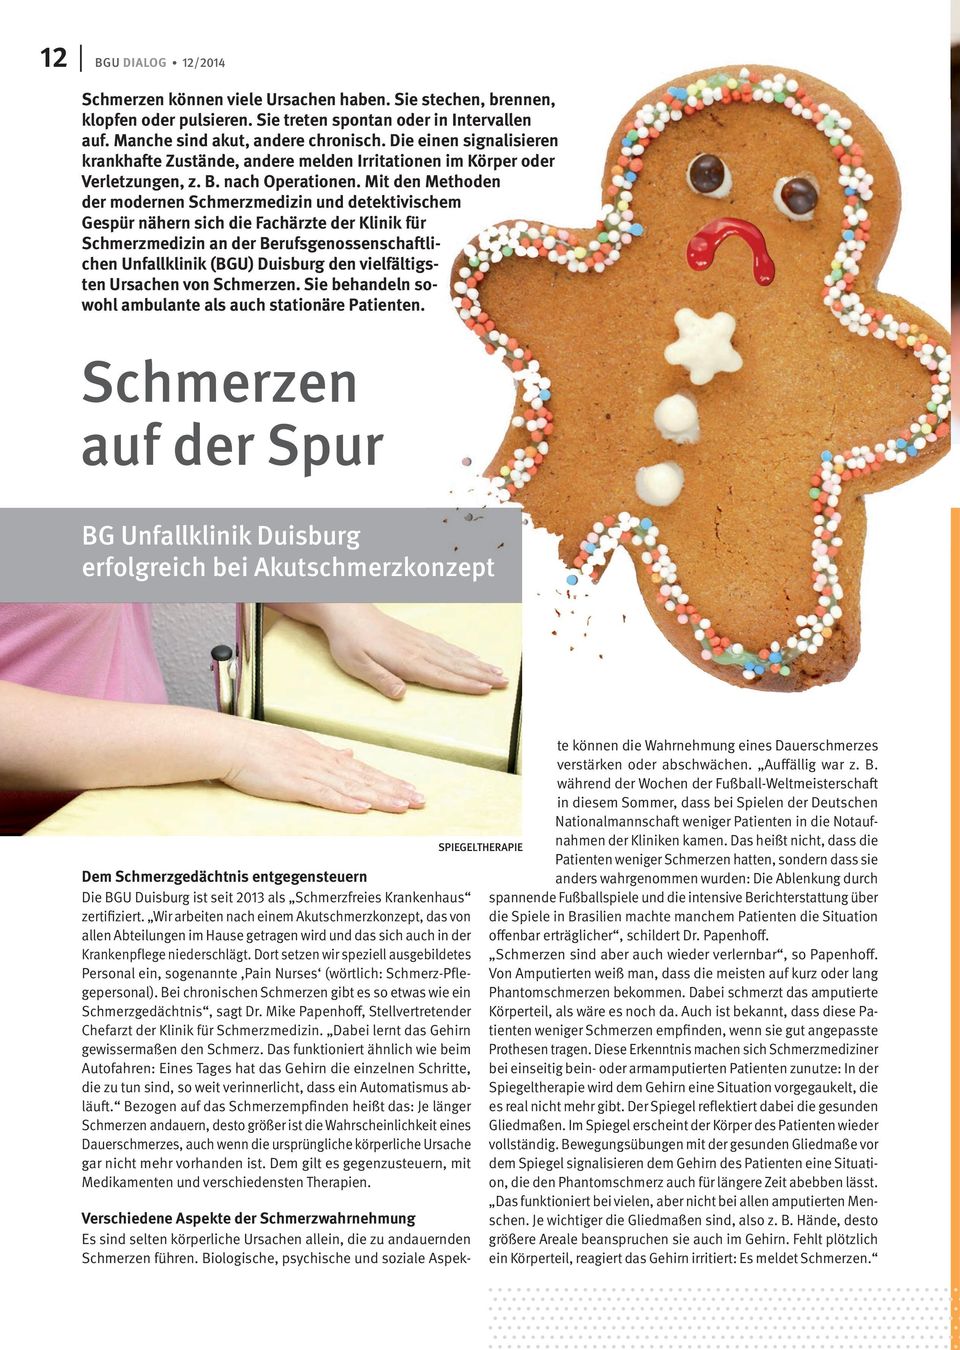 Mit den Methoden der modernen Schmerzmedizin und detektivischem Gespür nähern sich die Fachärzte der Klinik für Schmerzmedizin an der Berufsgenossenschaftlichen Unfallklinik (BGU) Duisburg den